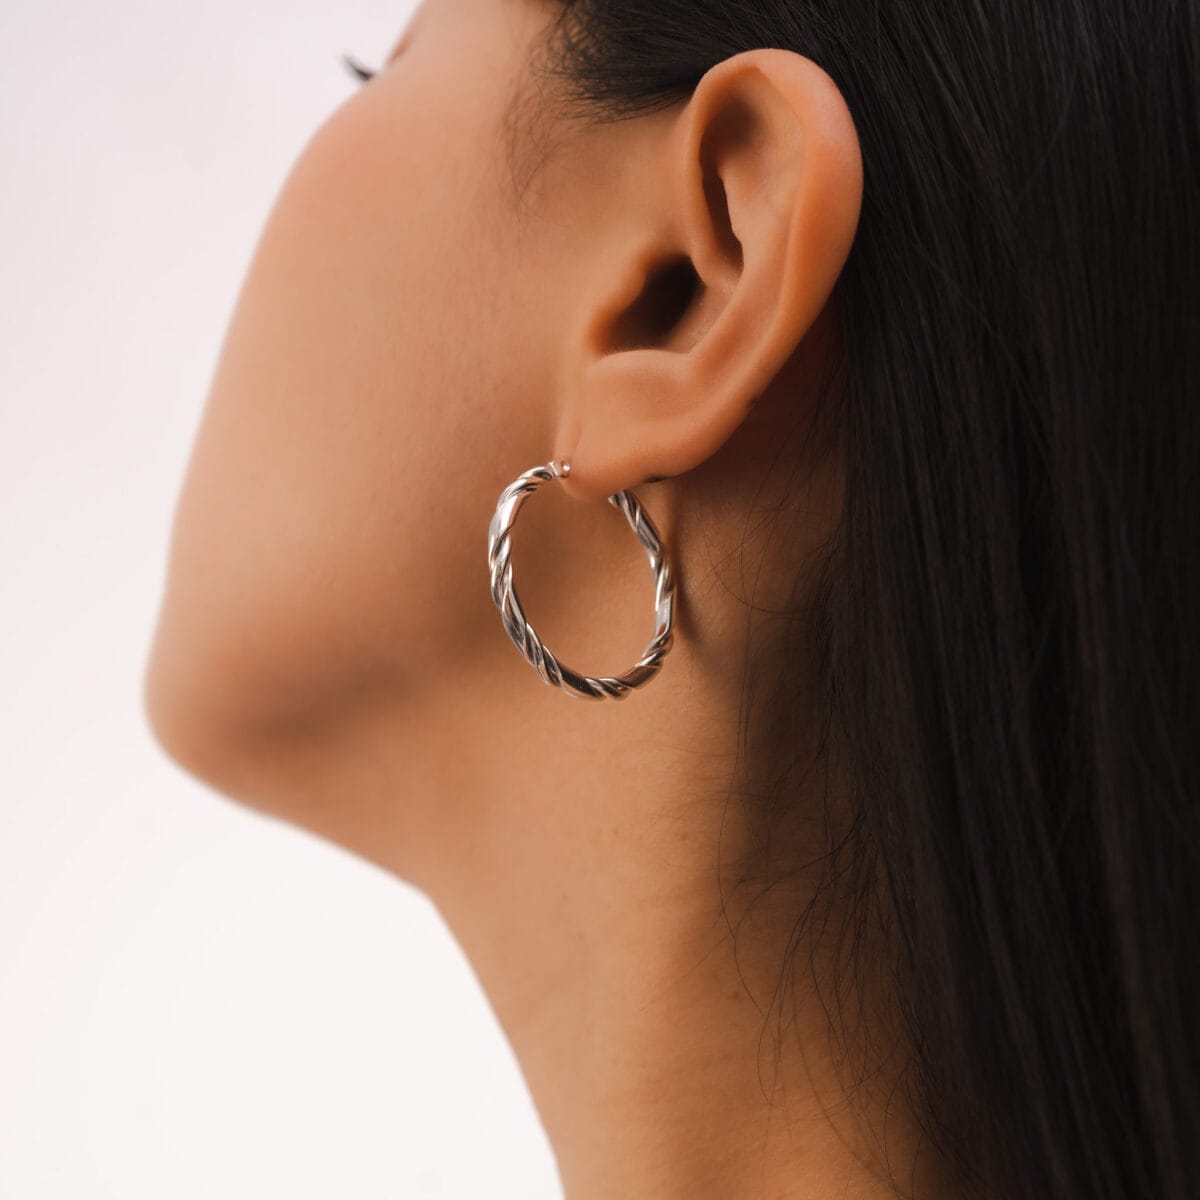 https://m.clubbella.co/product/kila-swirl-earrings/ Kila Swirl Hoop Earrings (1)